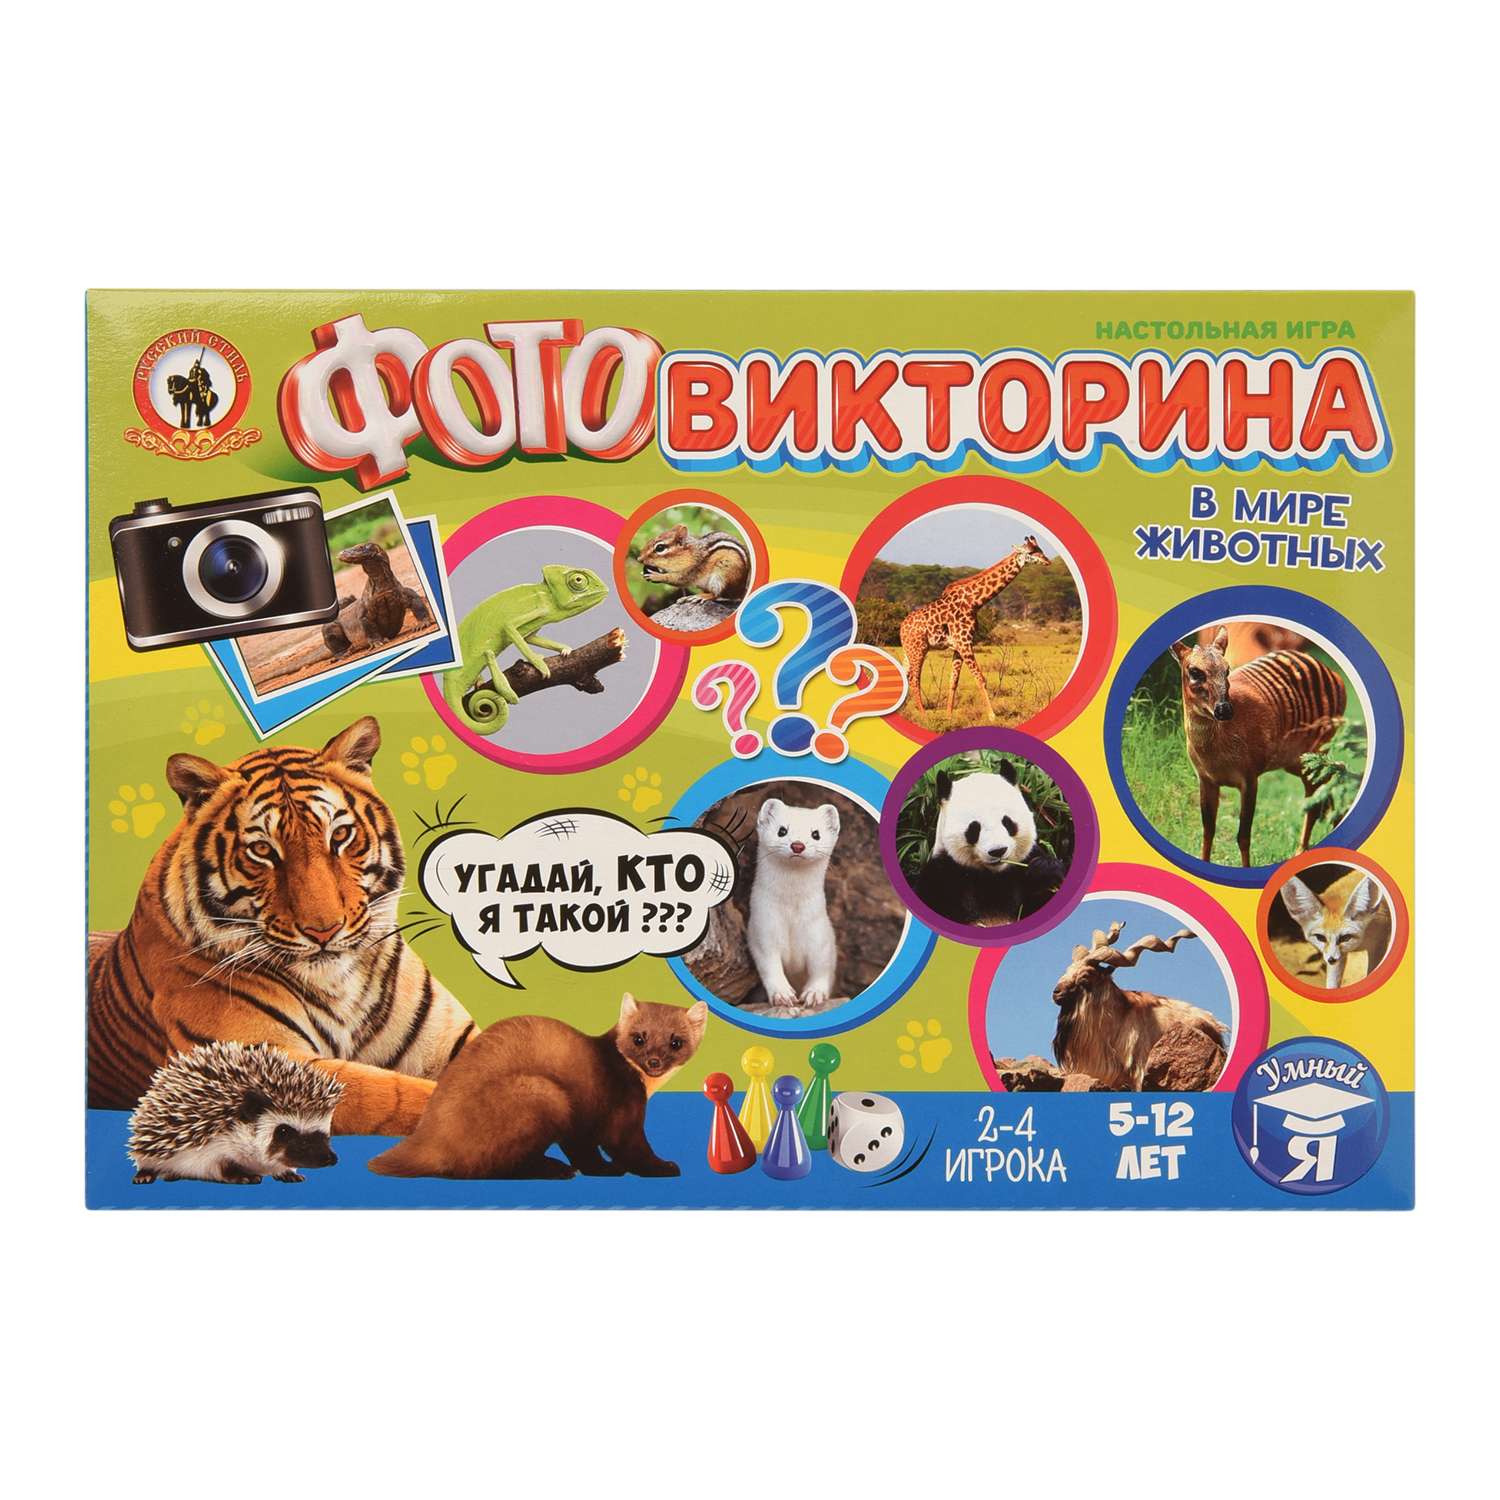 Фотовикторина Русский стиль В мире животных - фото 1